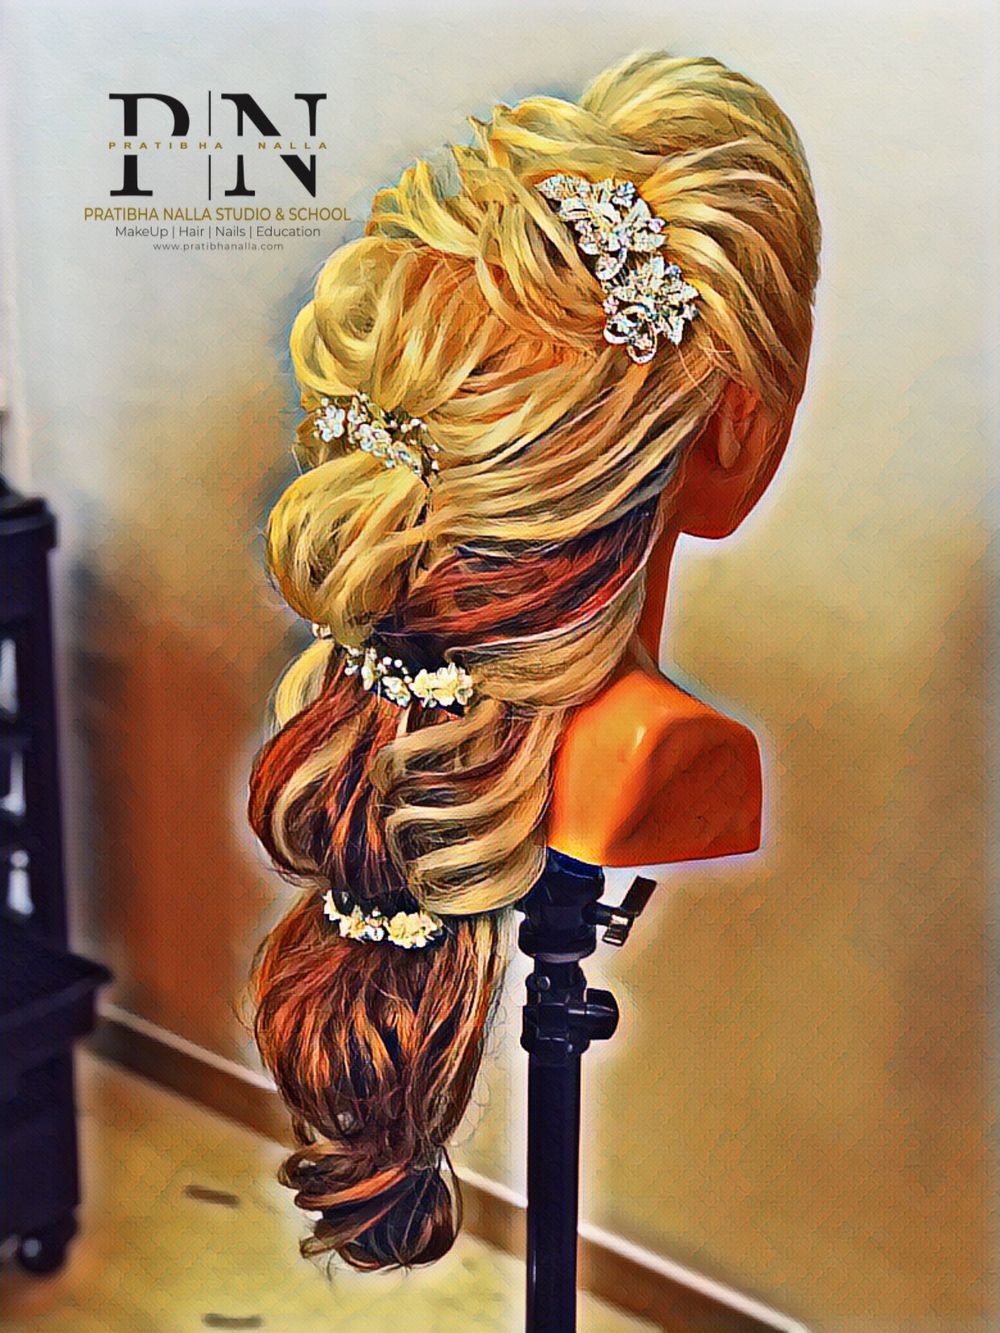 Photo From Hair work - By Pratibha Nalla Studio